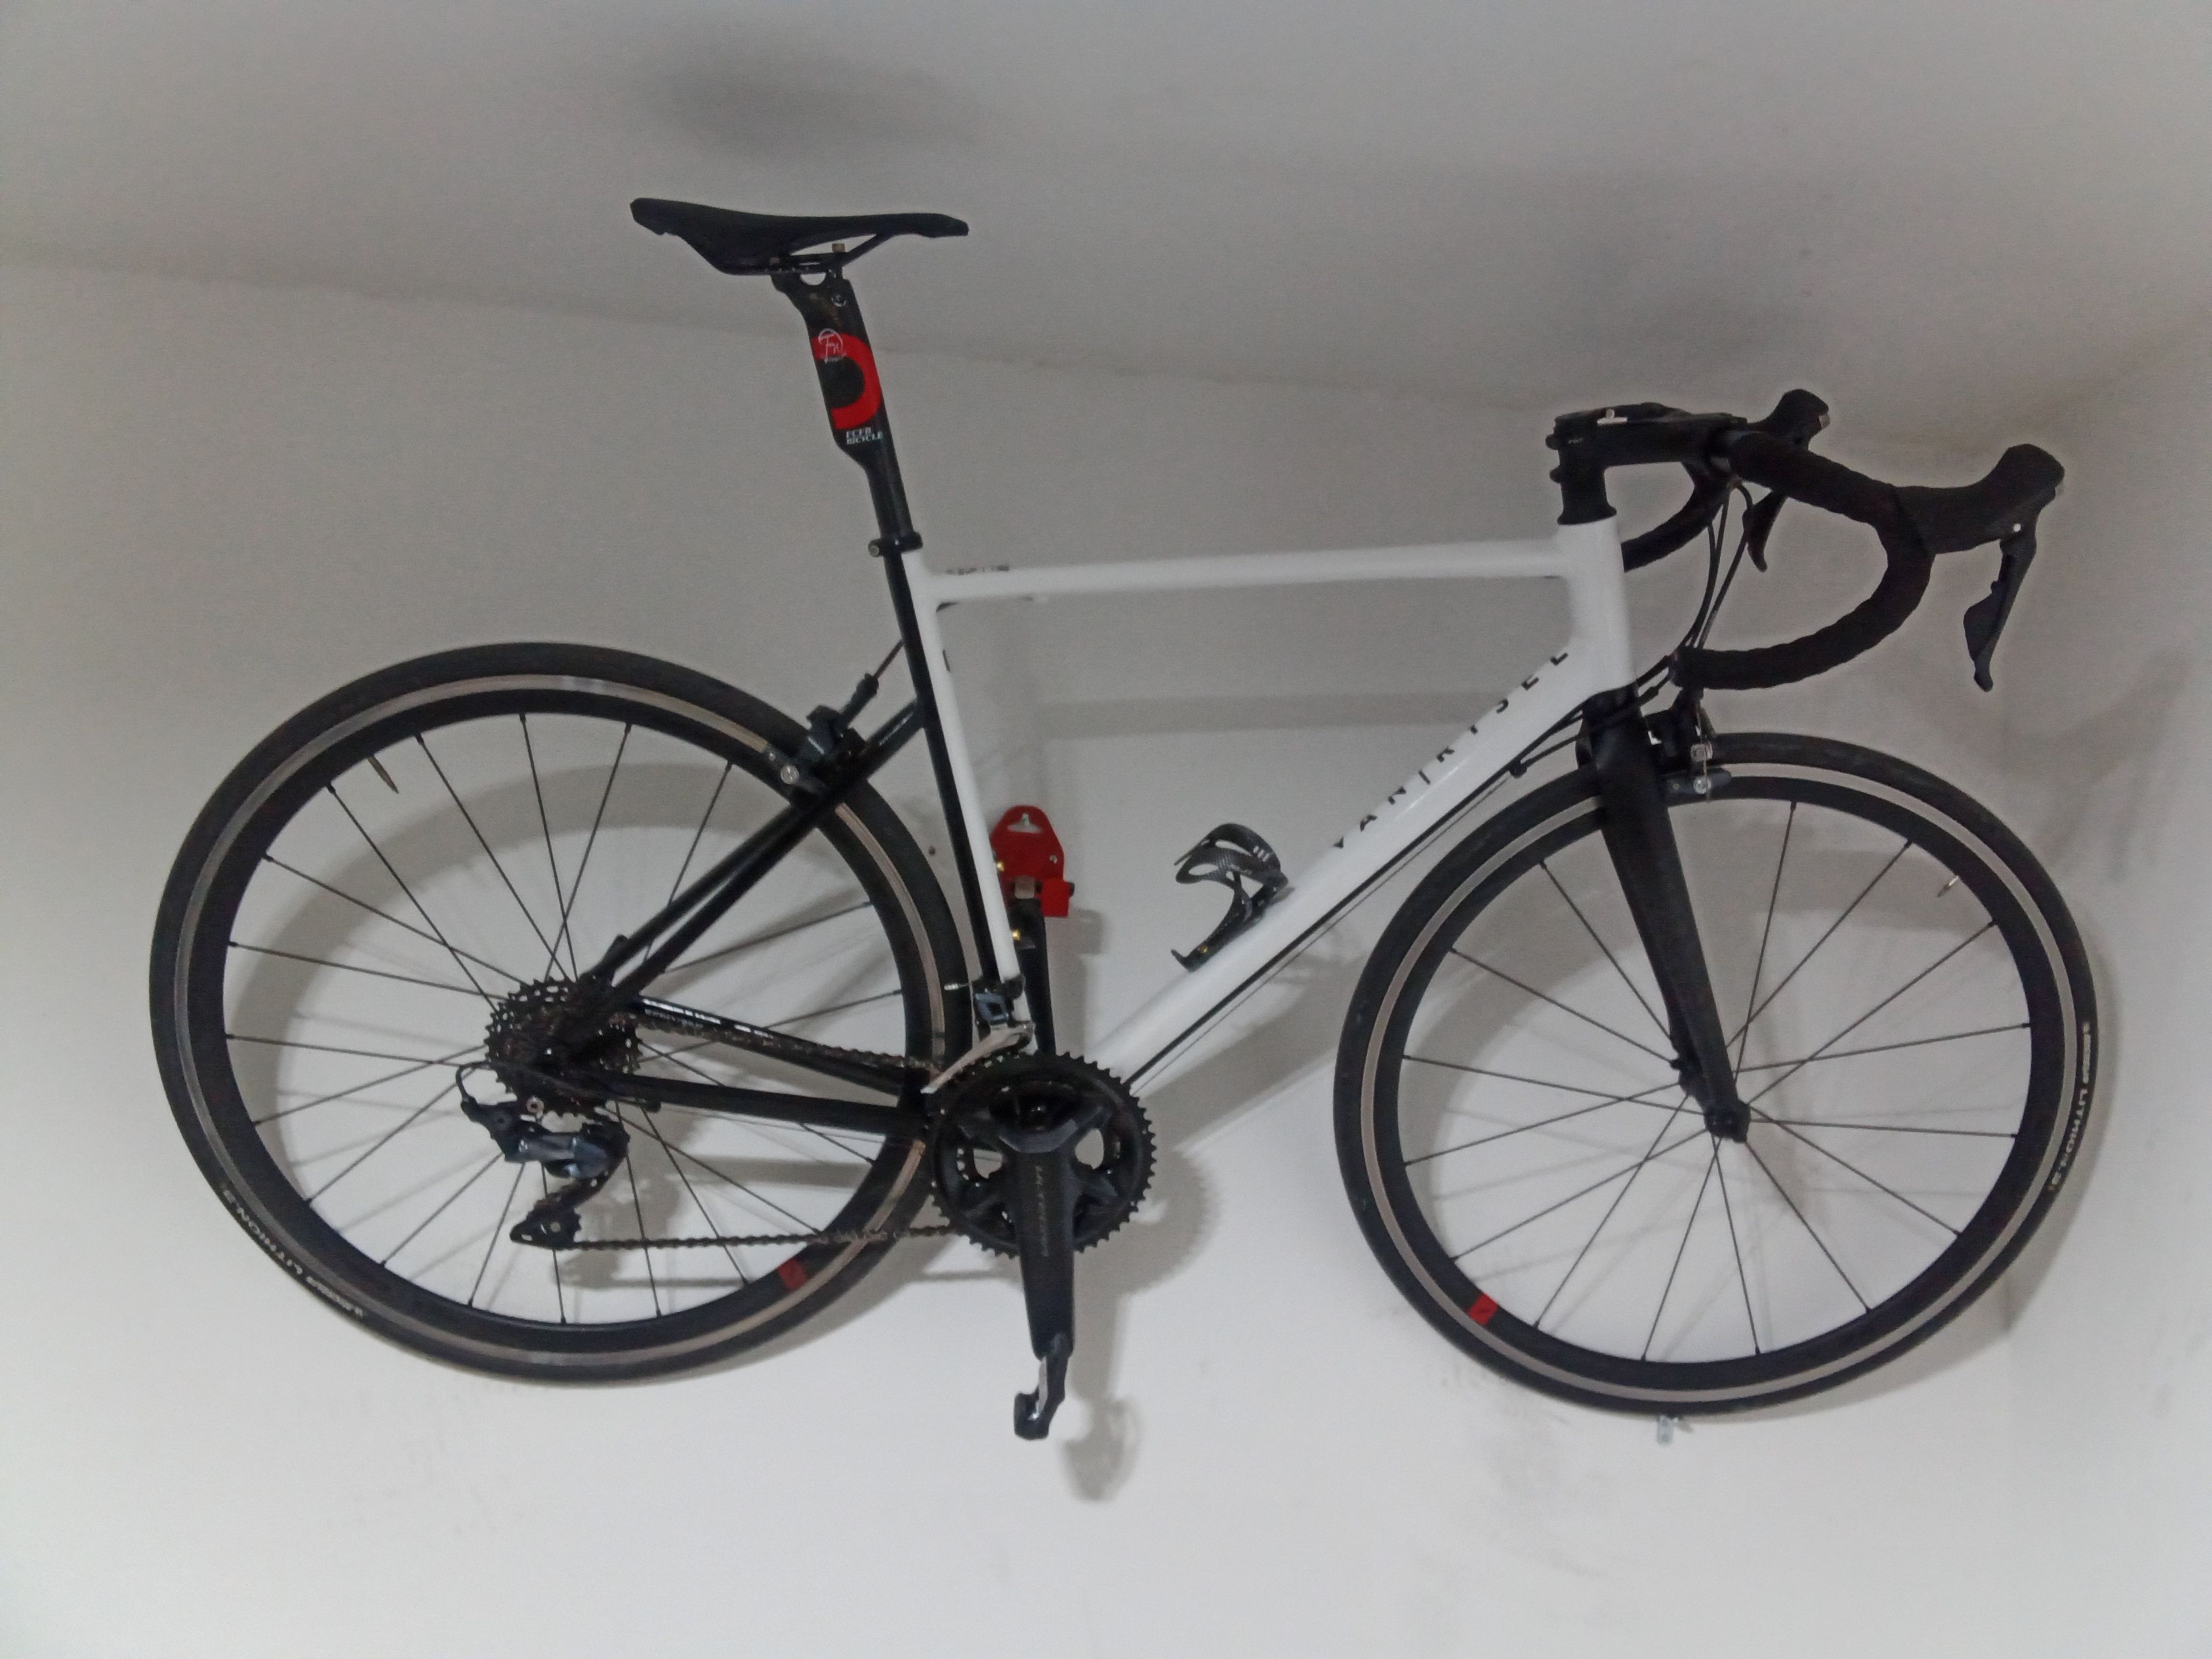 Van rysel EDR AF Road Bike, - Ultegra used in 56 cm